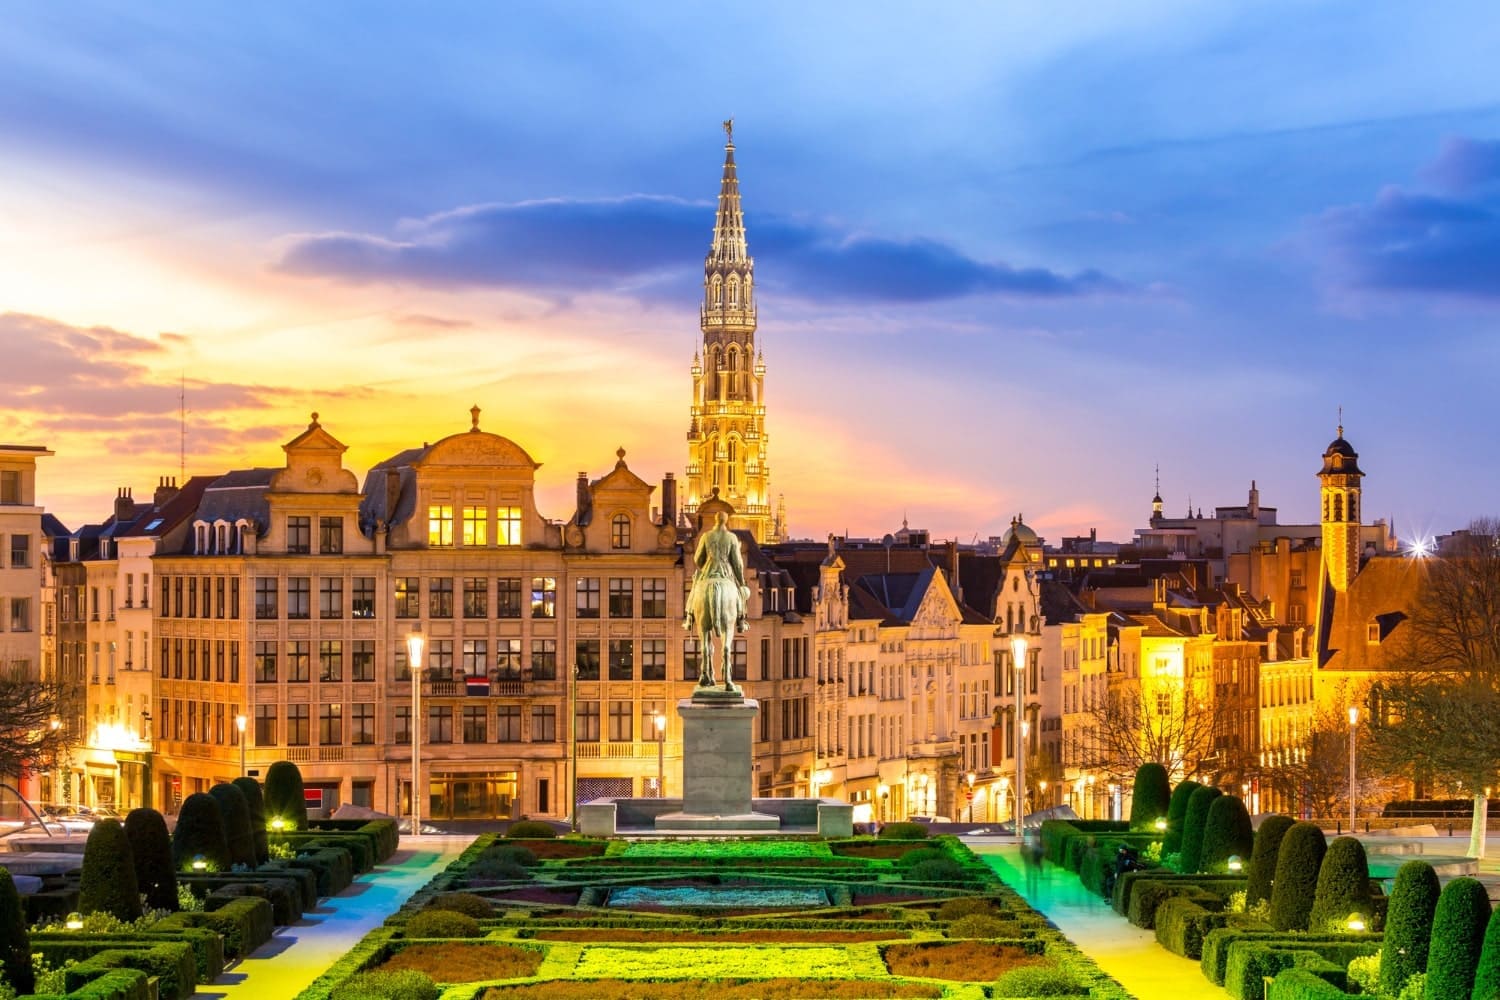 Belgium - Brussels